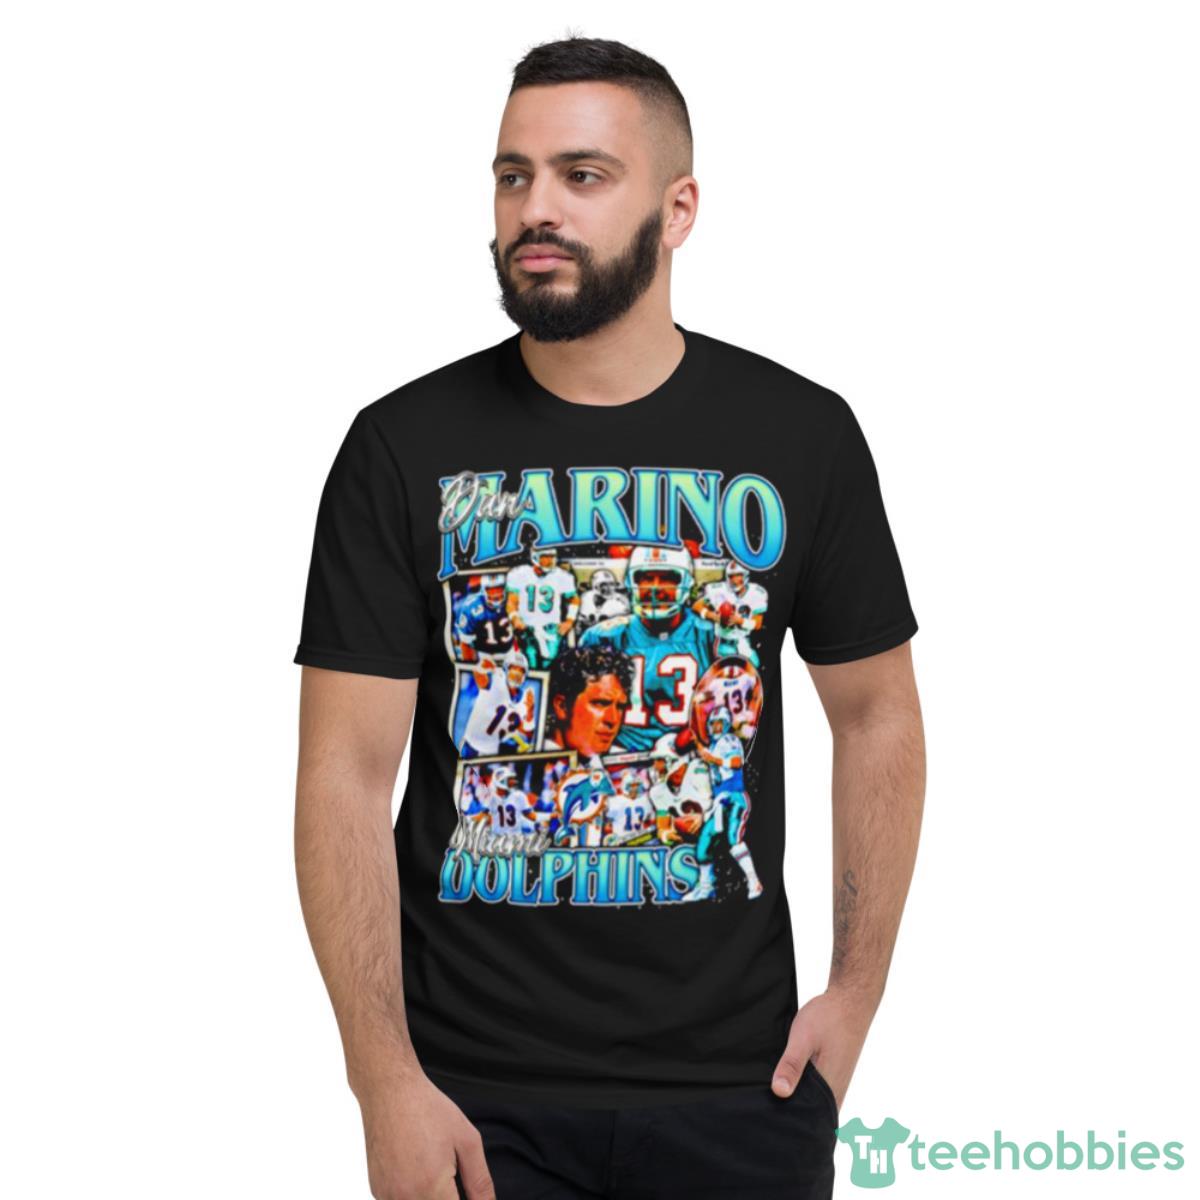 Dan Marino Miami Dolphins shirt - Short Sleeve T-Shirt